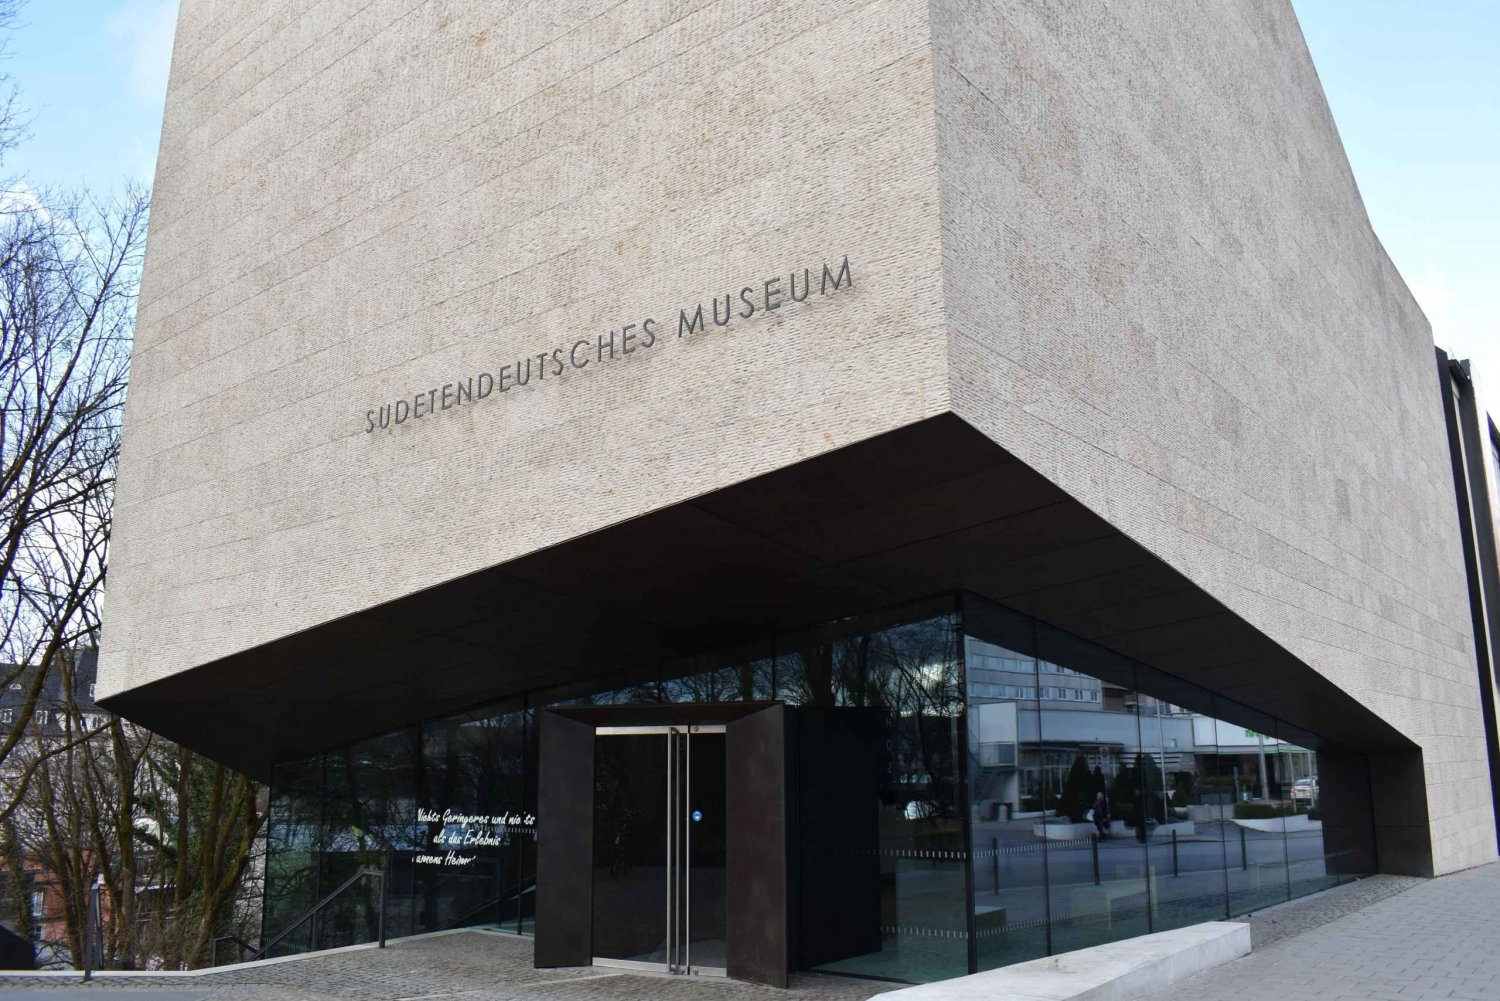 Führung durch das Sudetendeutsche Museum